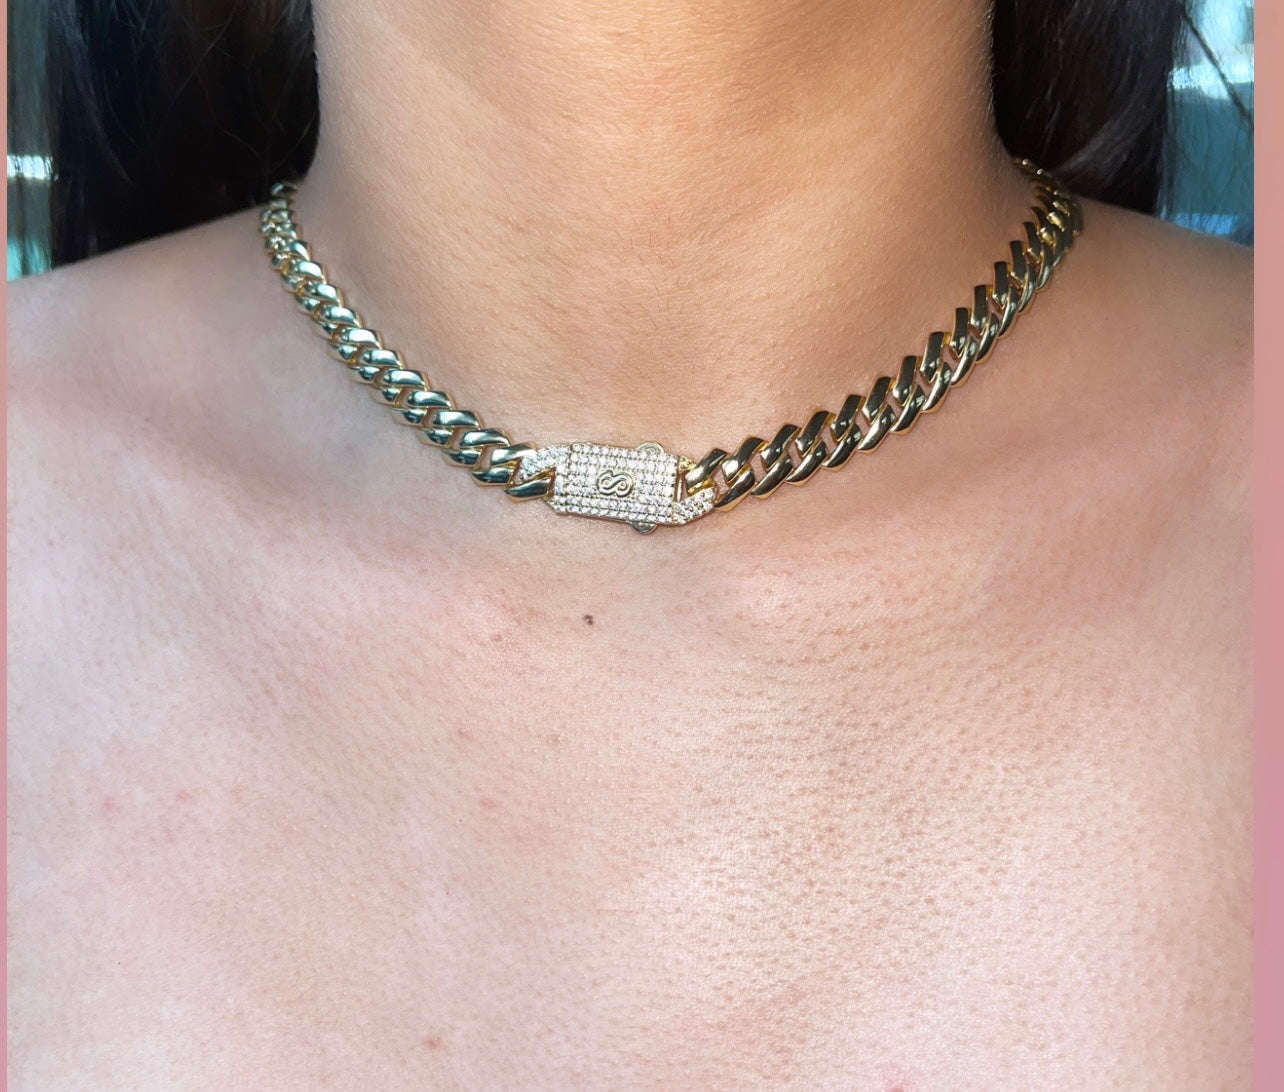 Monaco necklace